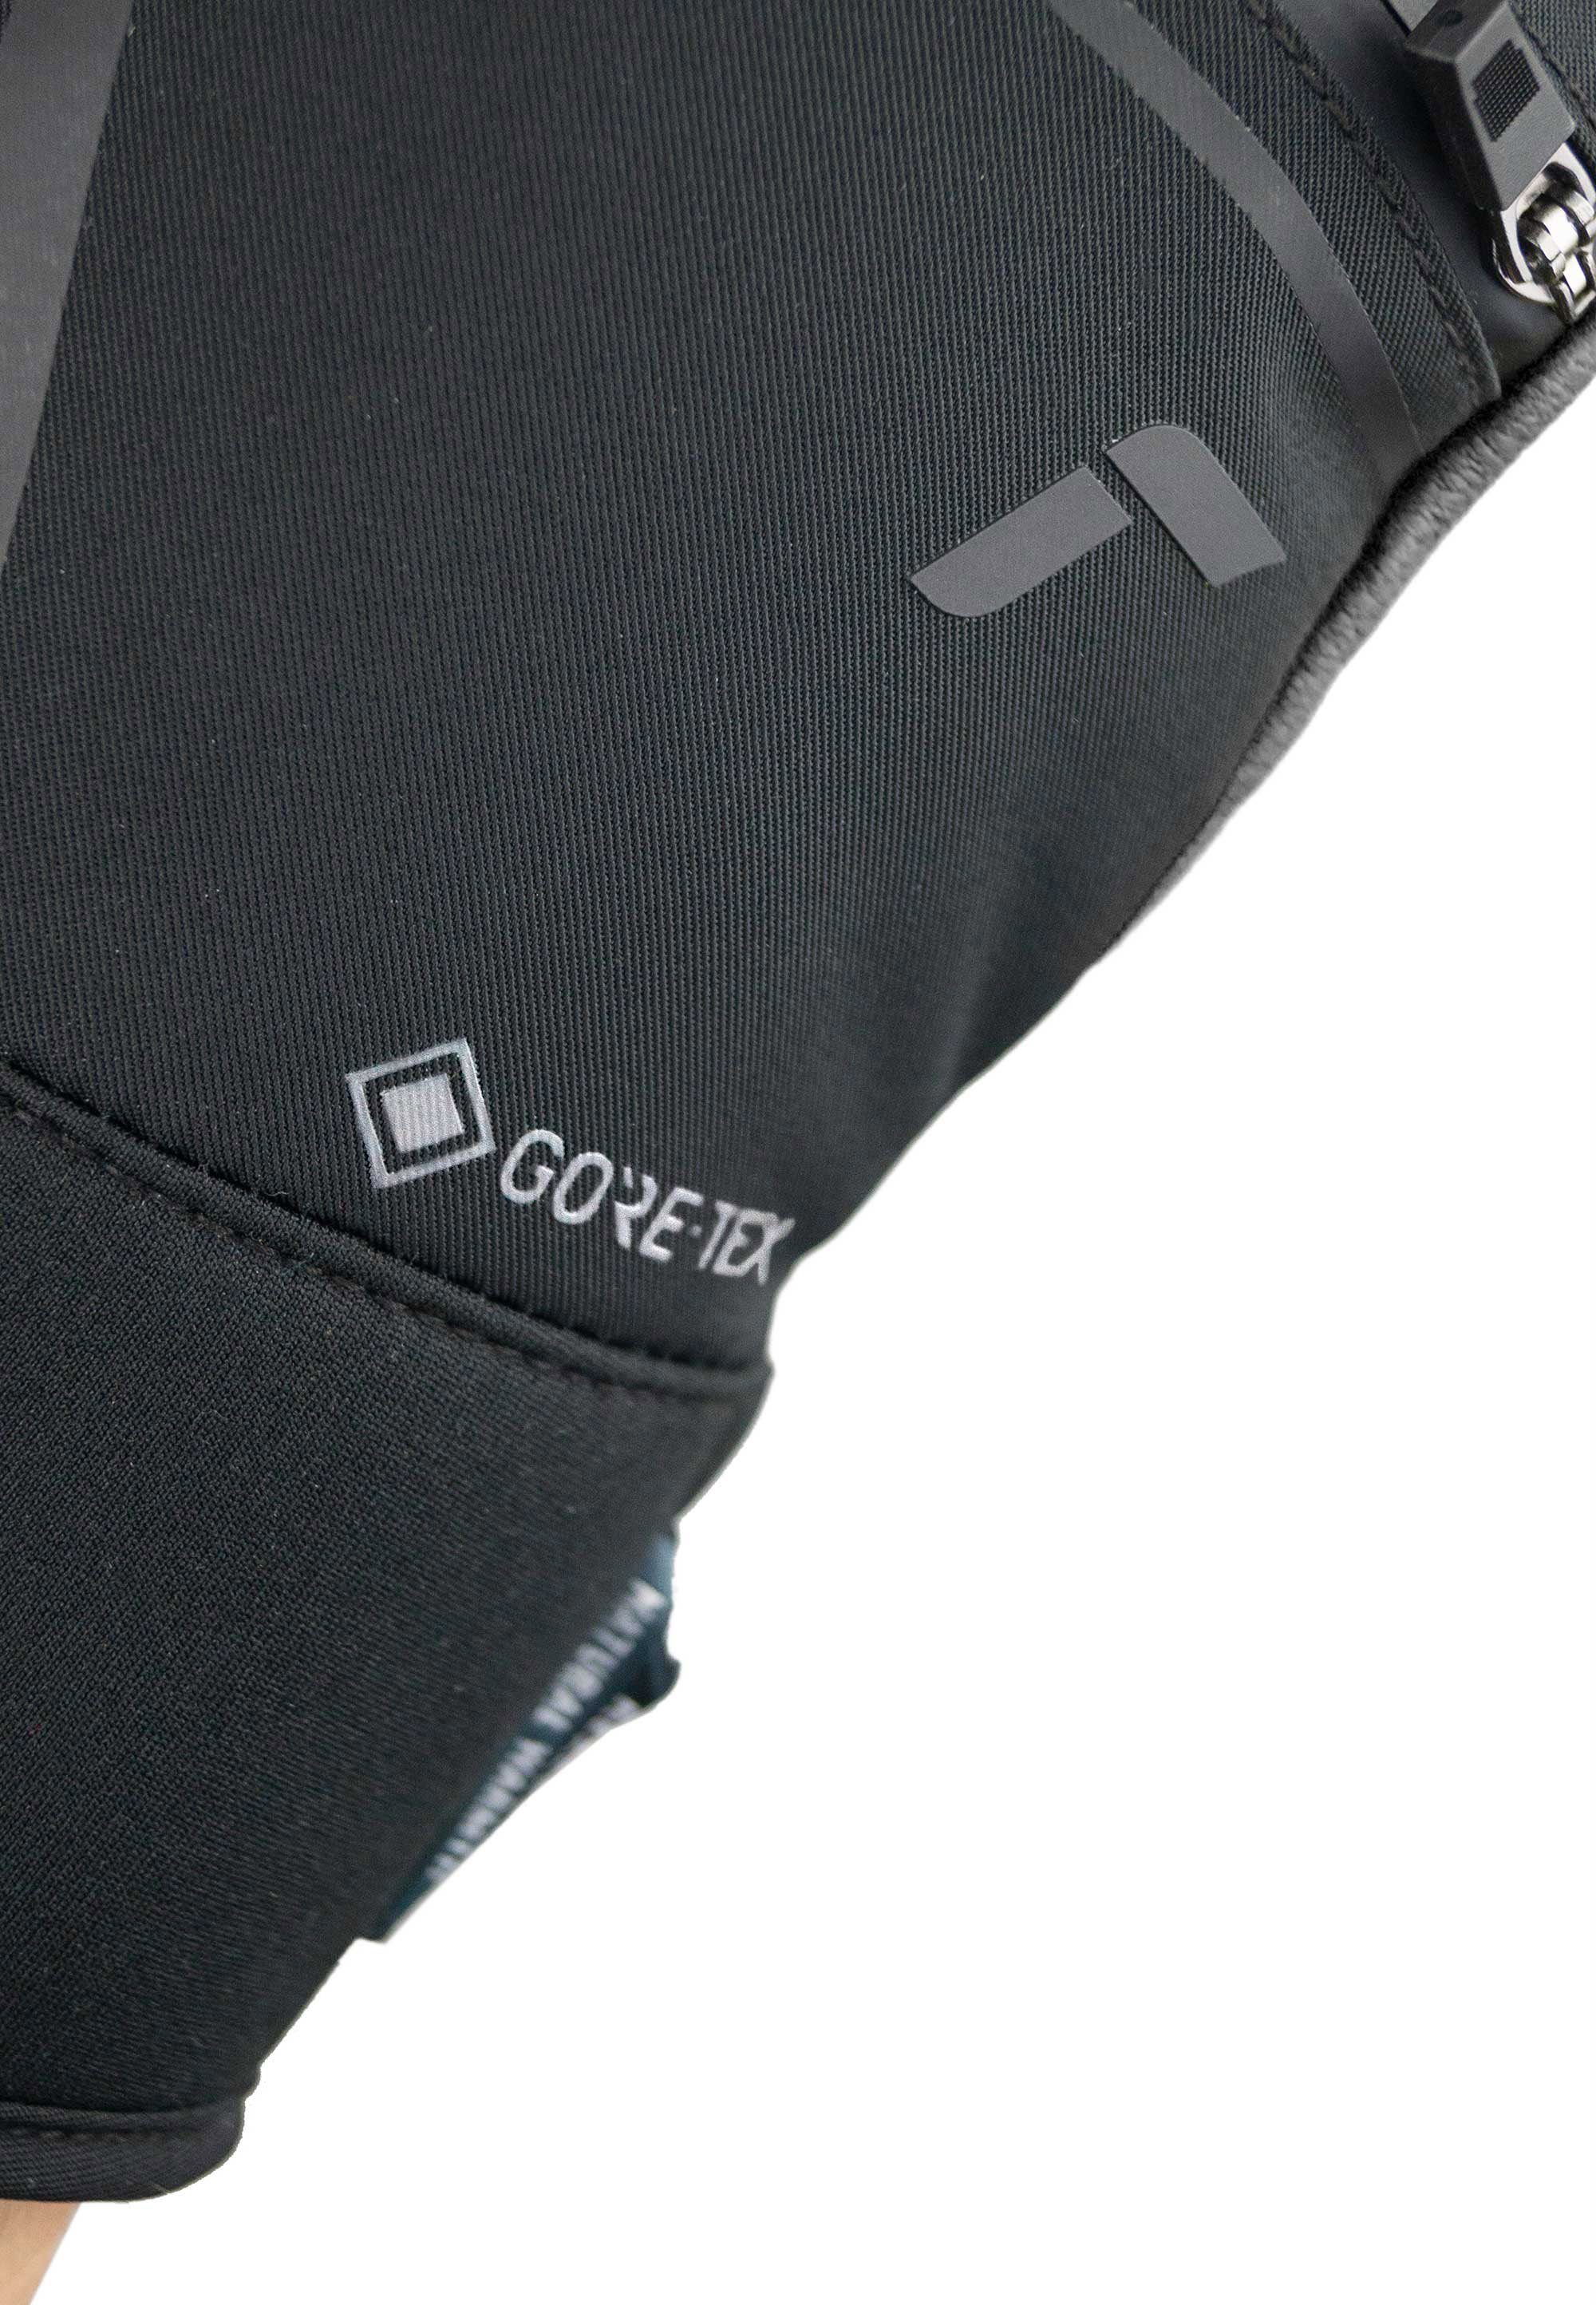 GORE-TEX mit SC verstärkten schwarz-silberfarben Down Spirit Fingerspitzen Reusch Skihandschuhe